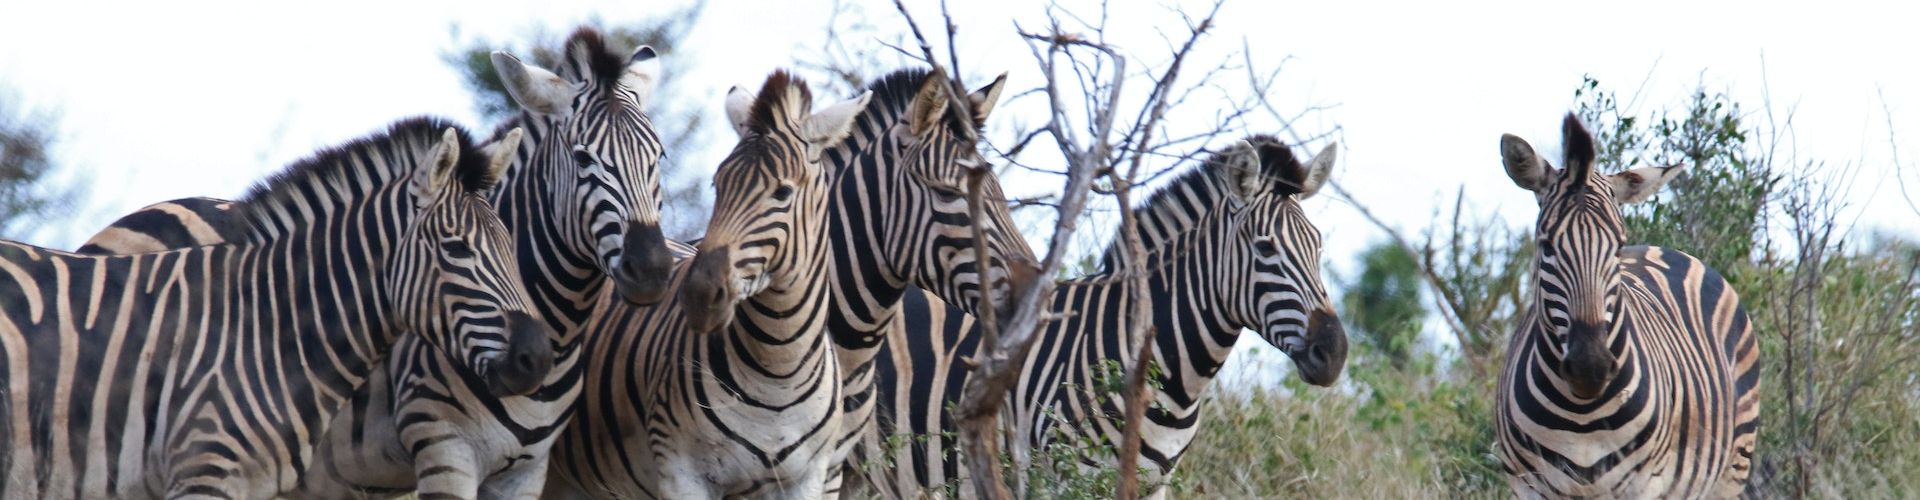 Verschillende zebra's dicht bij elkaar in een nationaal park in Tanzania